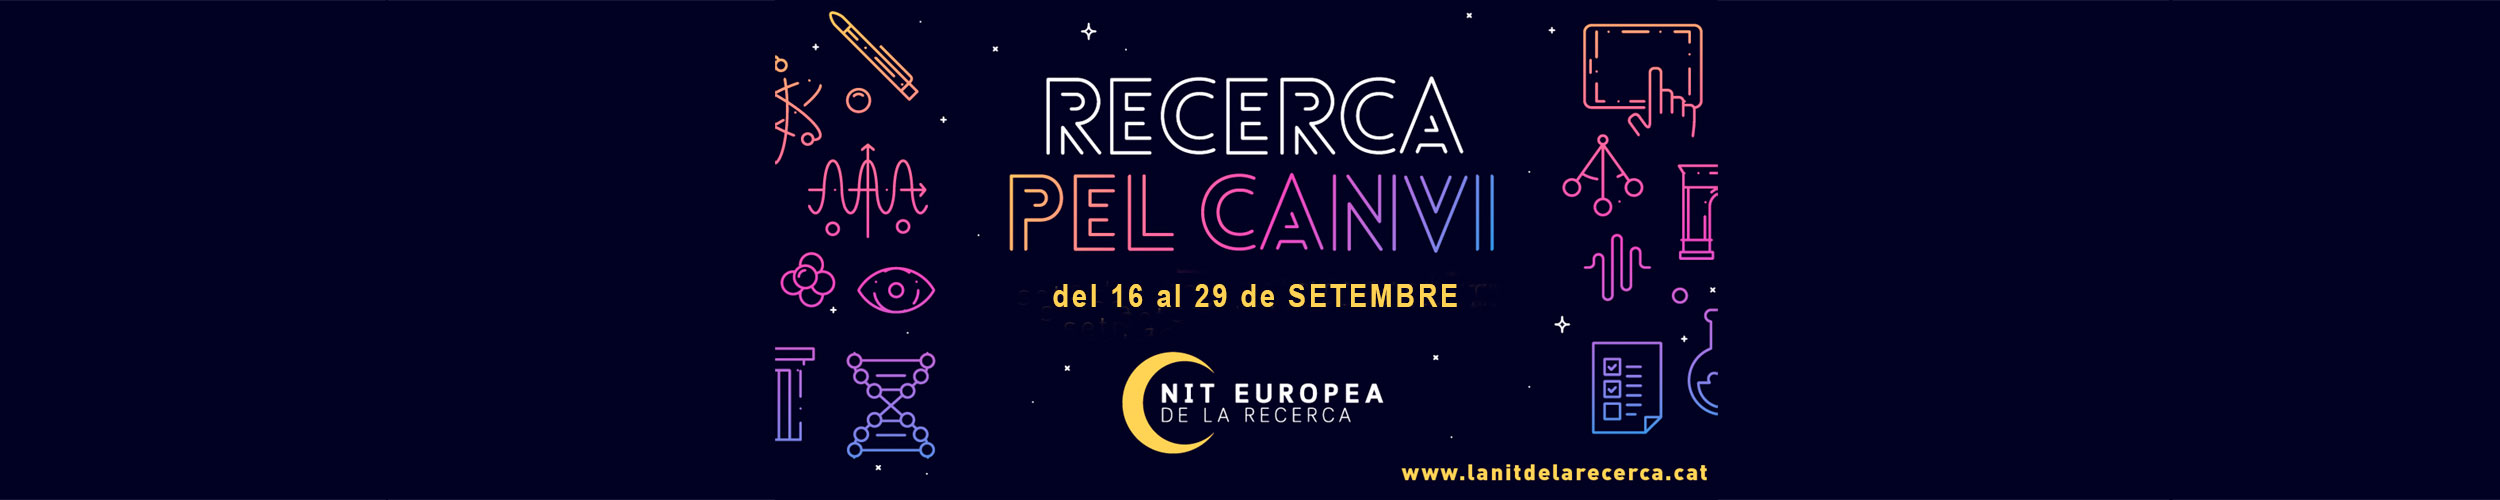 Researchers Night - NIT EUROPEA DE LA RECERCA